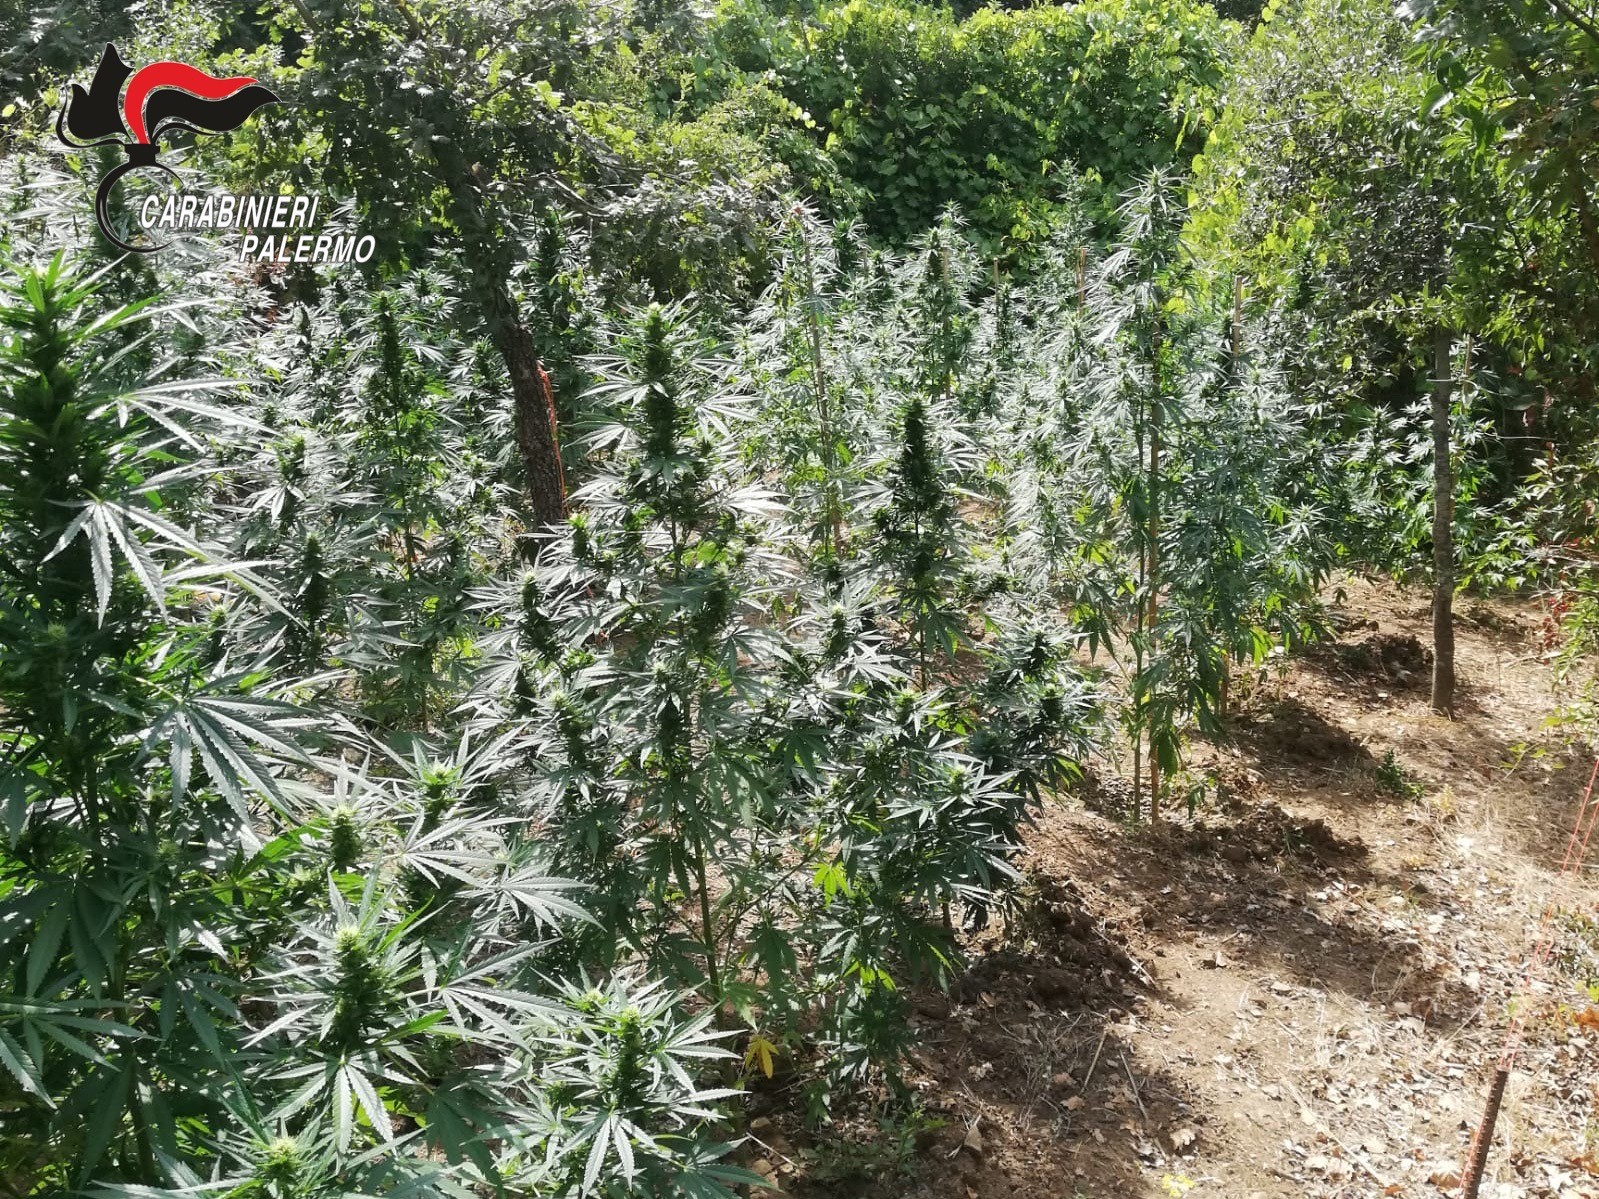 Coltiva cannabis in quantità in un’area boschiva, 66enne nei guai: scattano i domiciliari